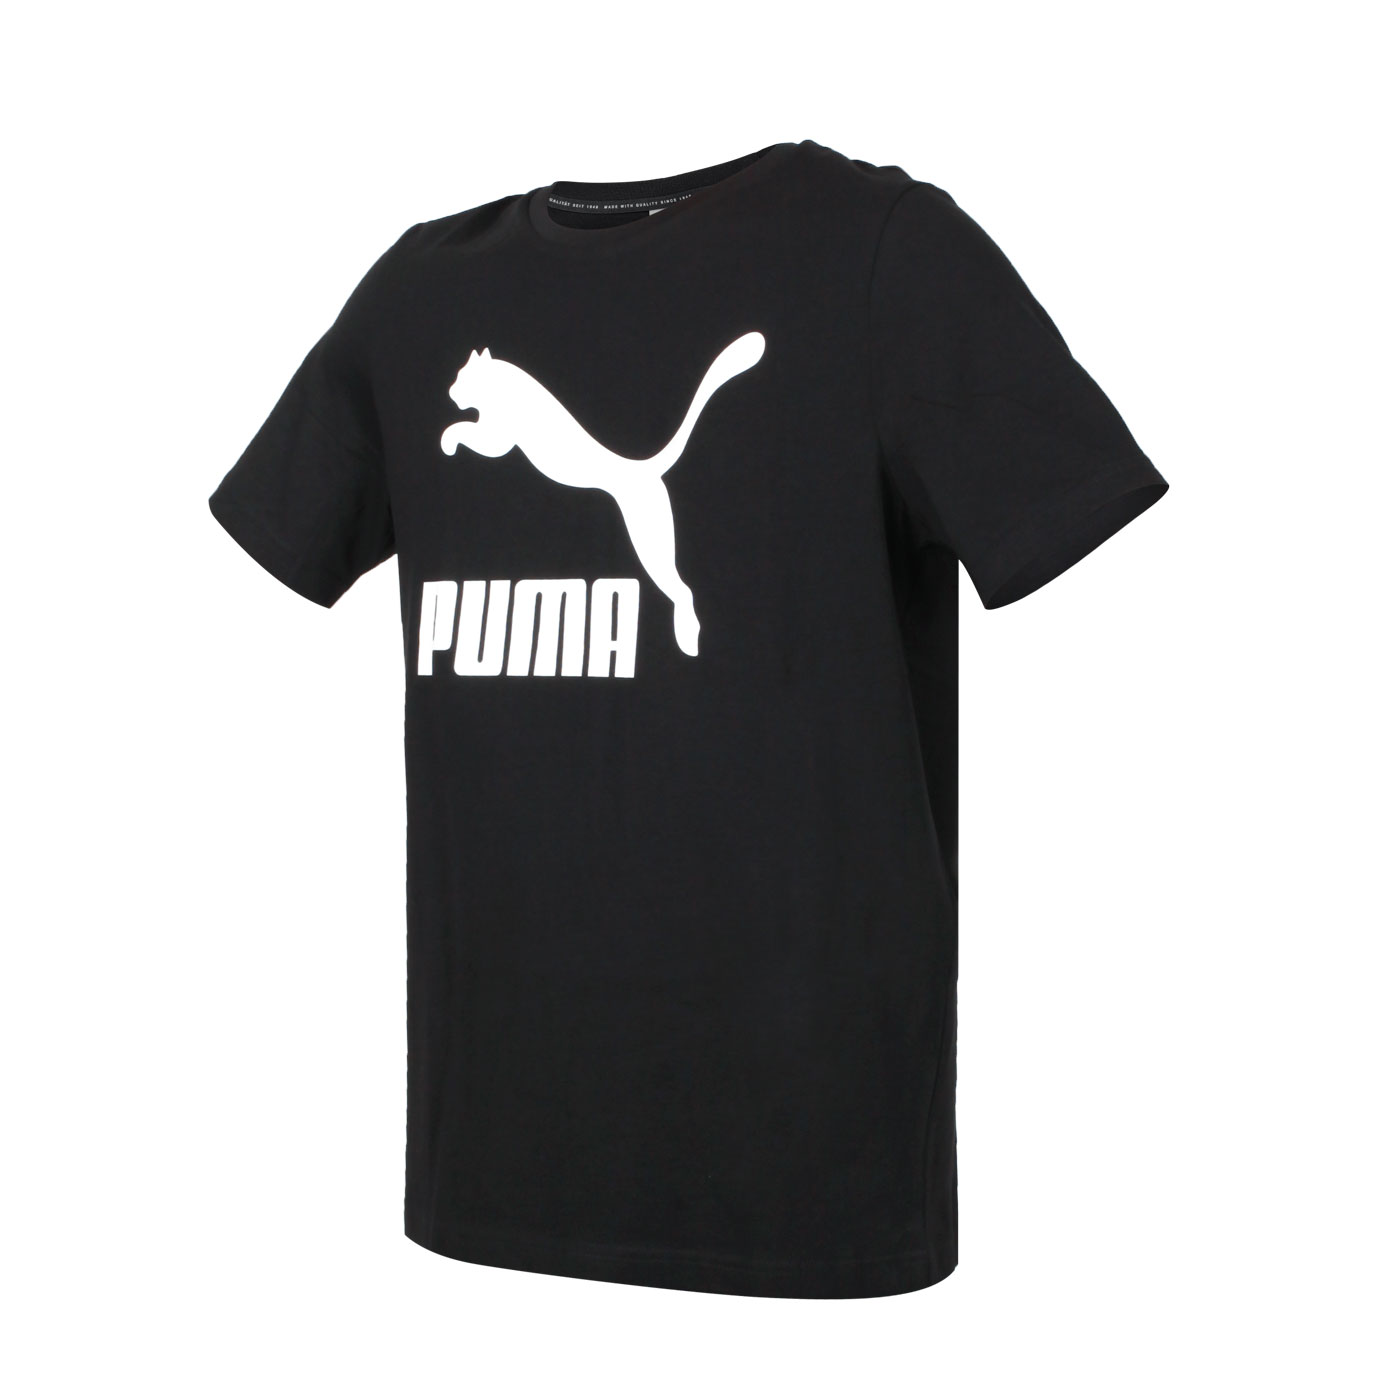 PUMA 男款流行系列Classics寬鬆短袖T恤 53008801 - 黑白